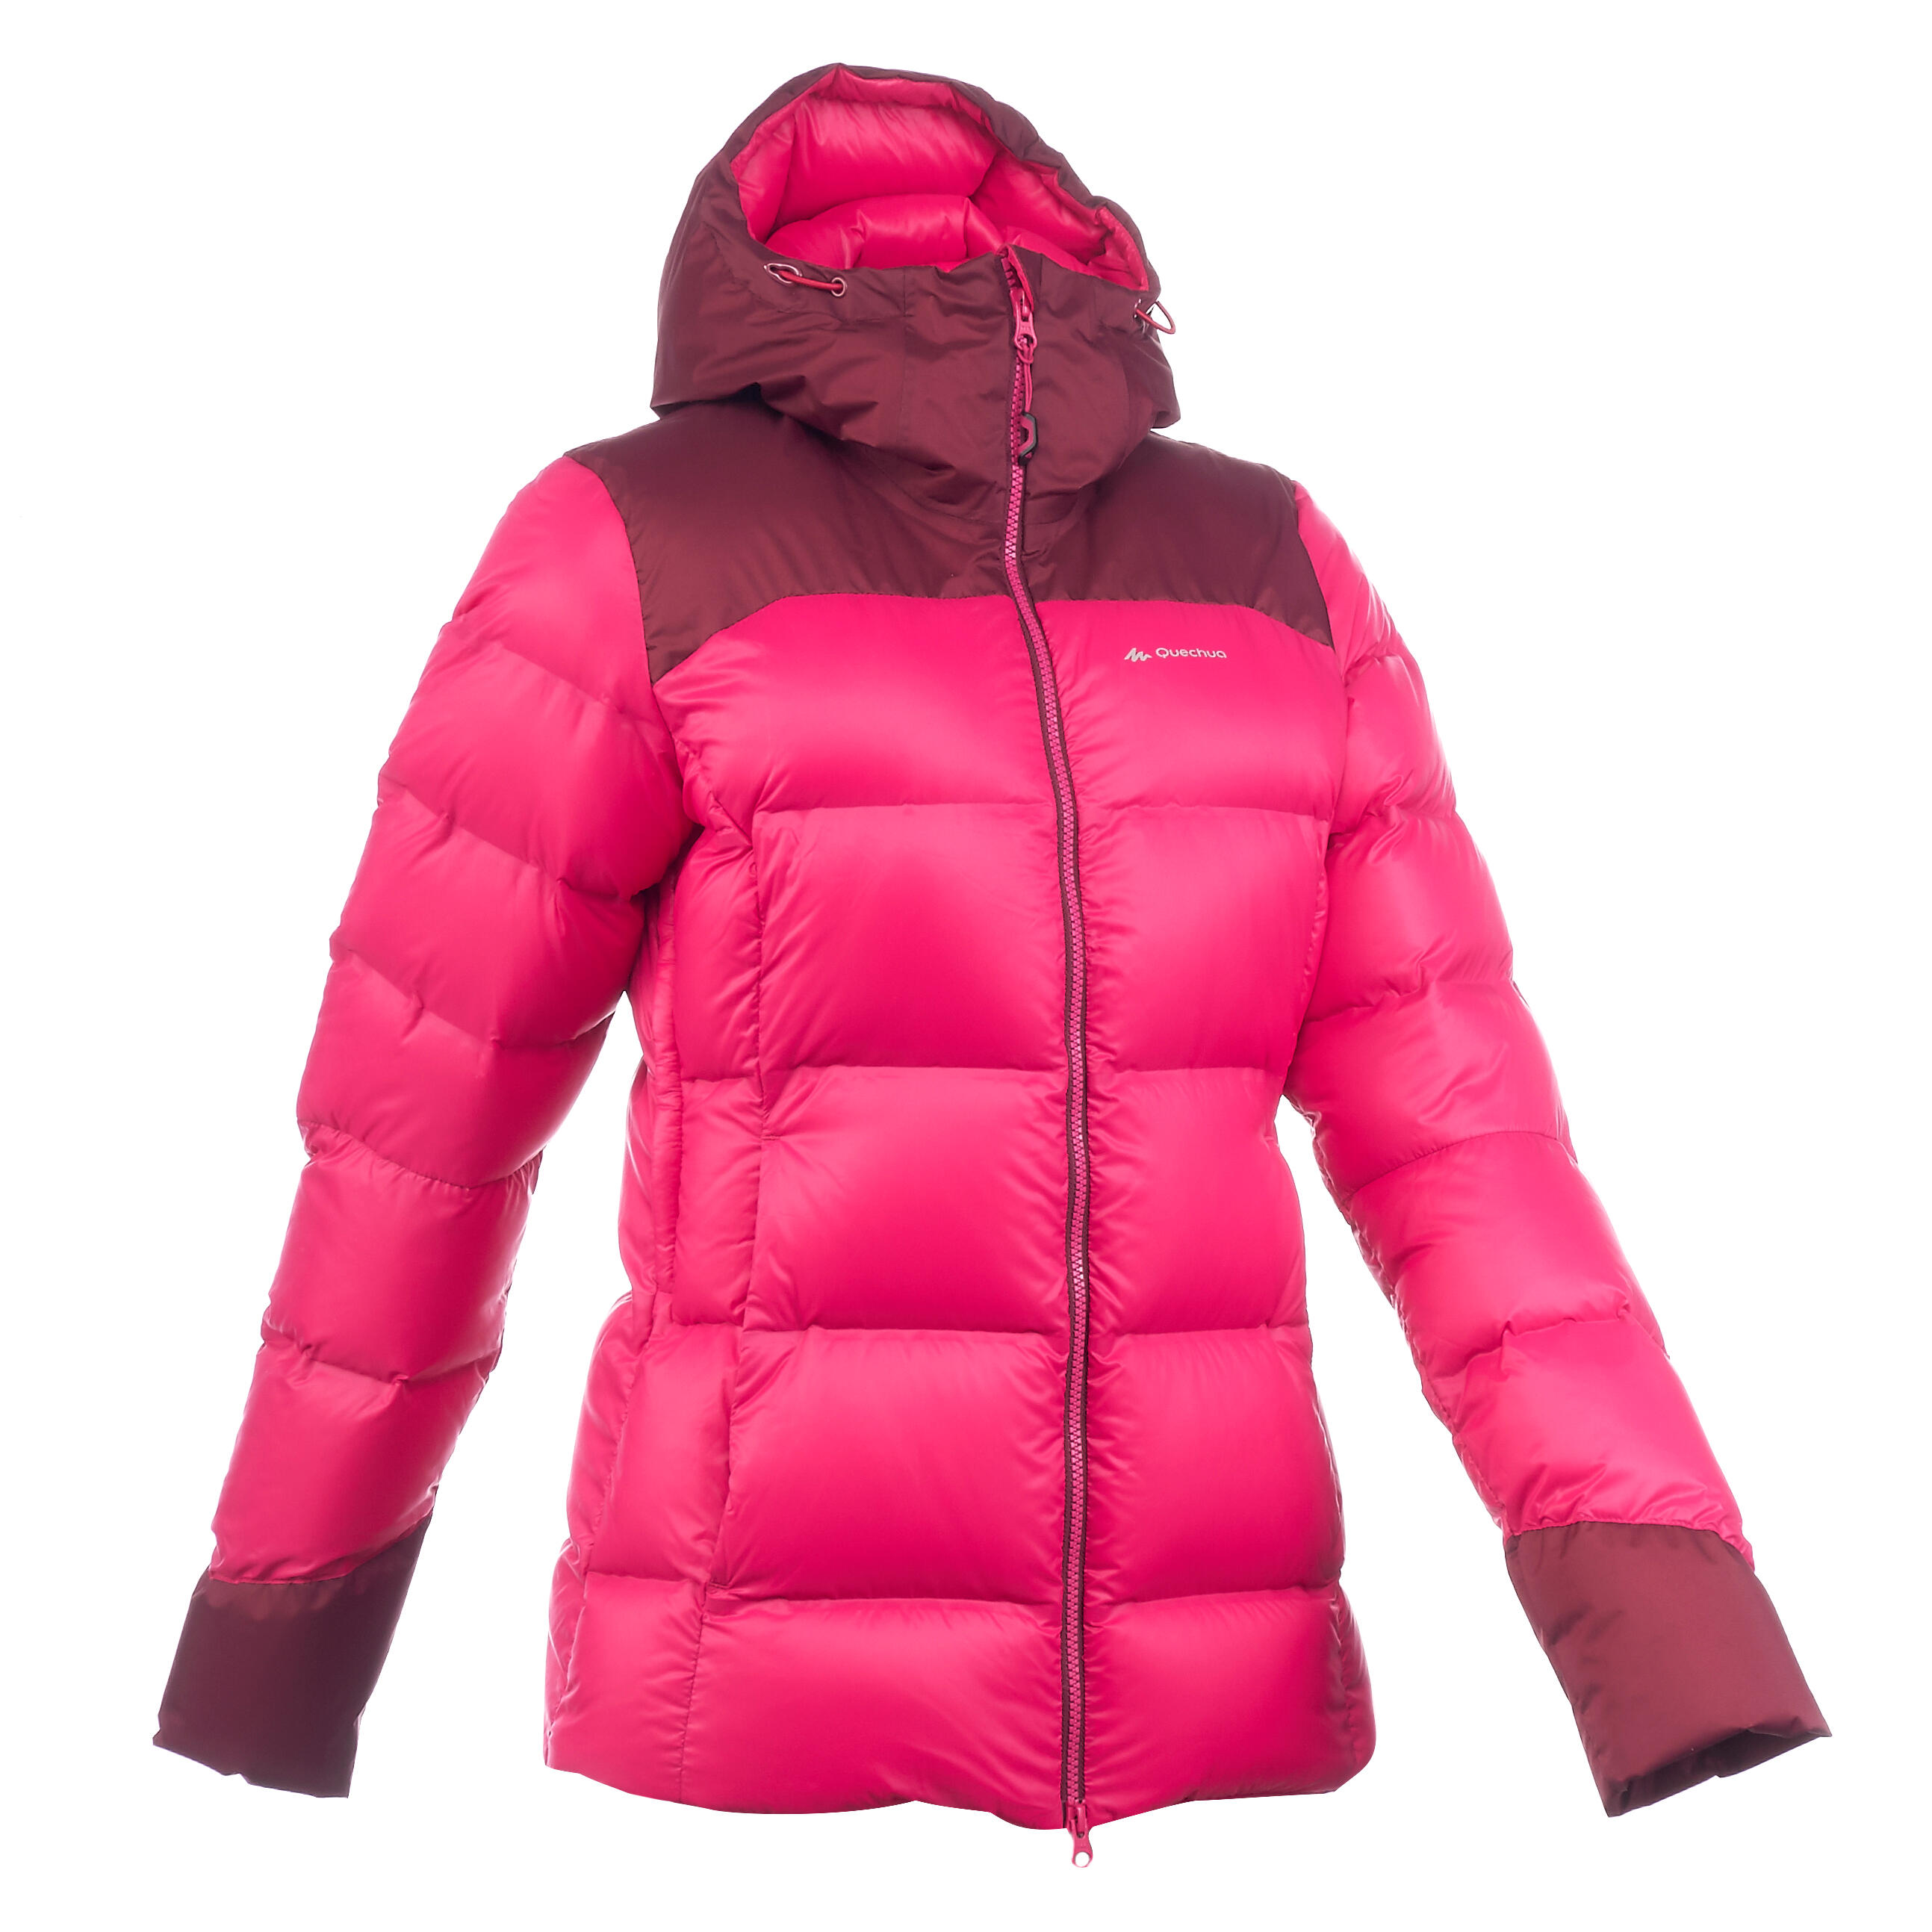 FORCLAZ Top Warm Women's Trekking Down Jacket - Dark Pink